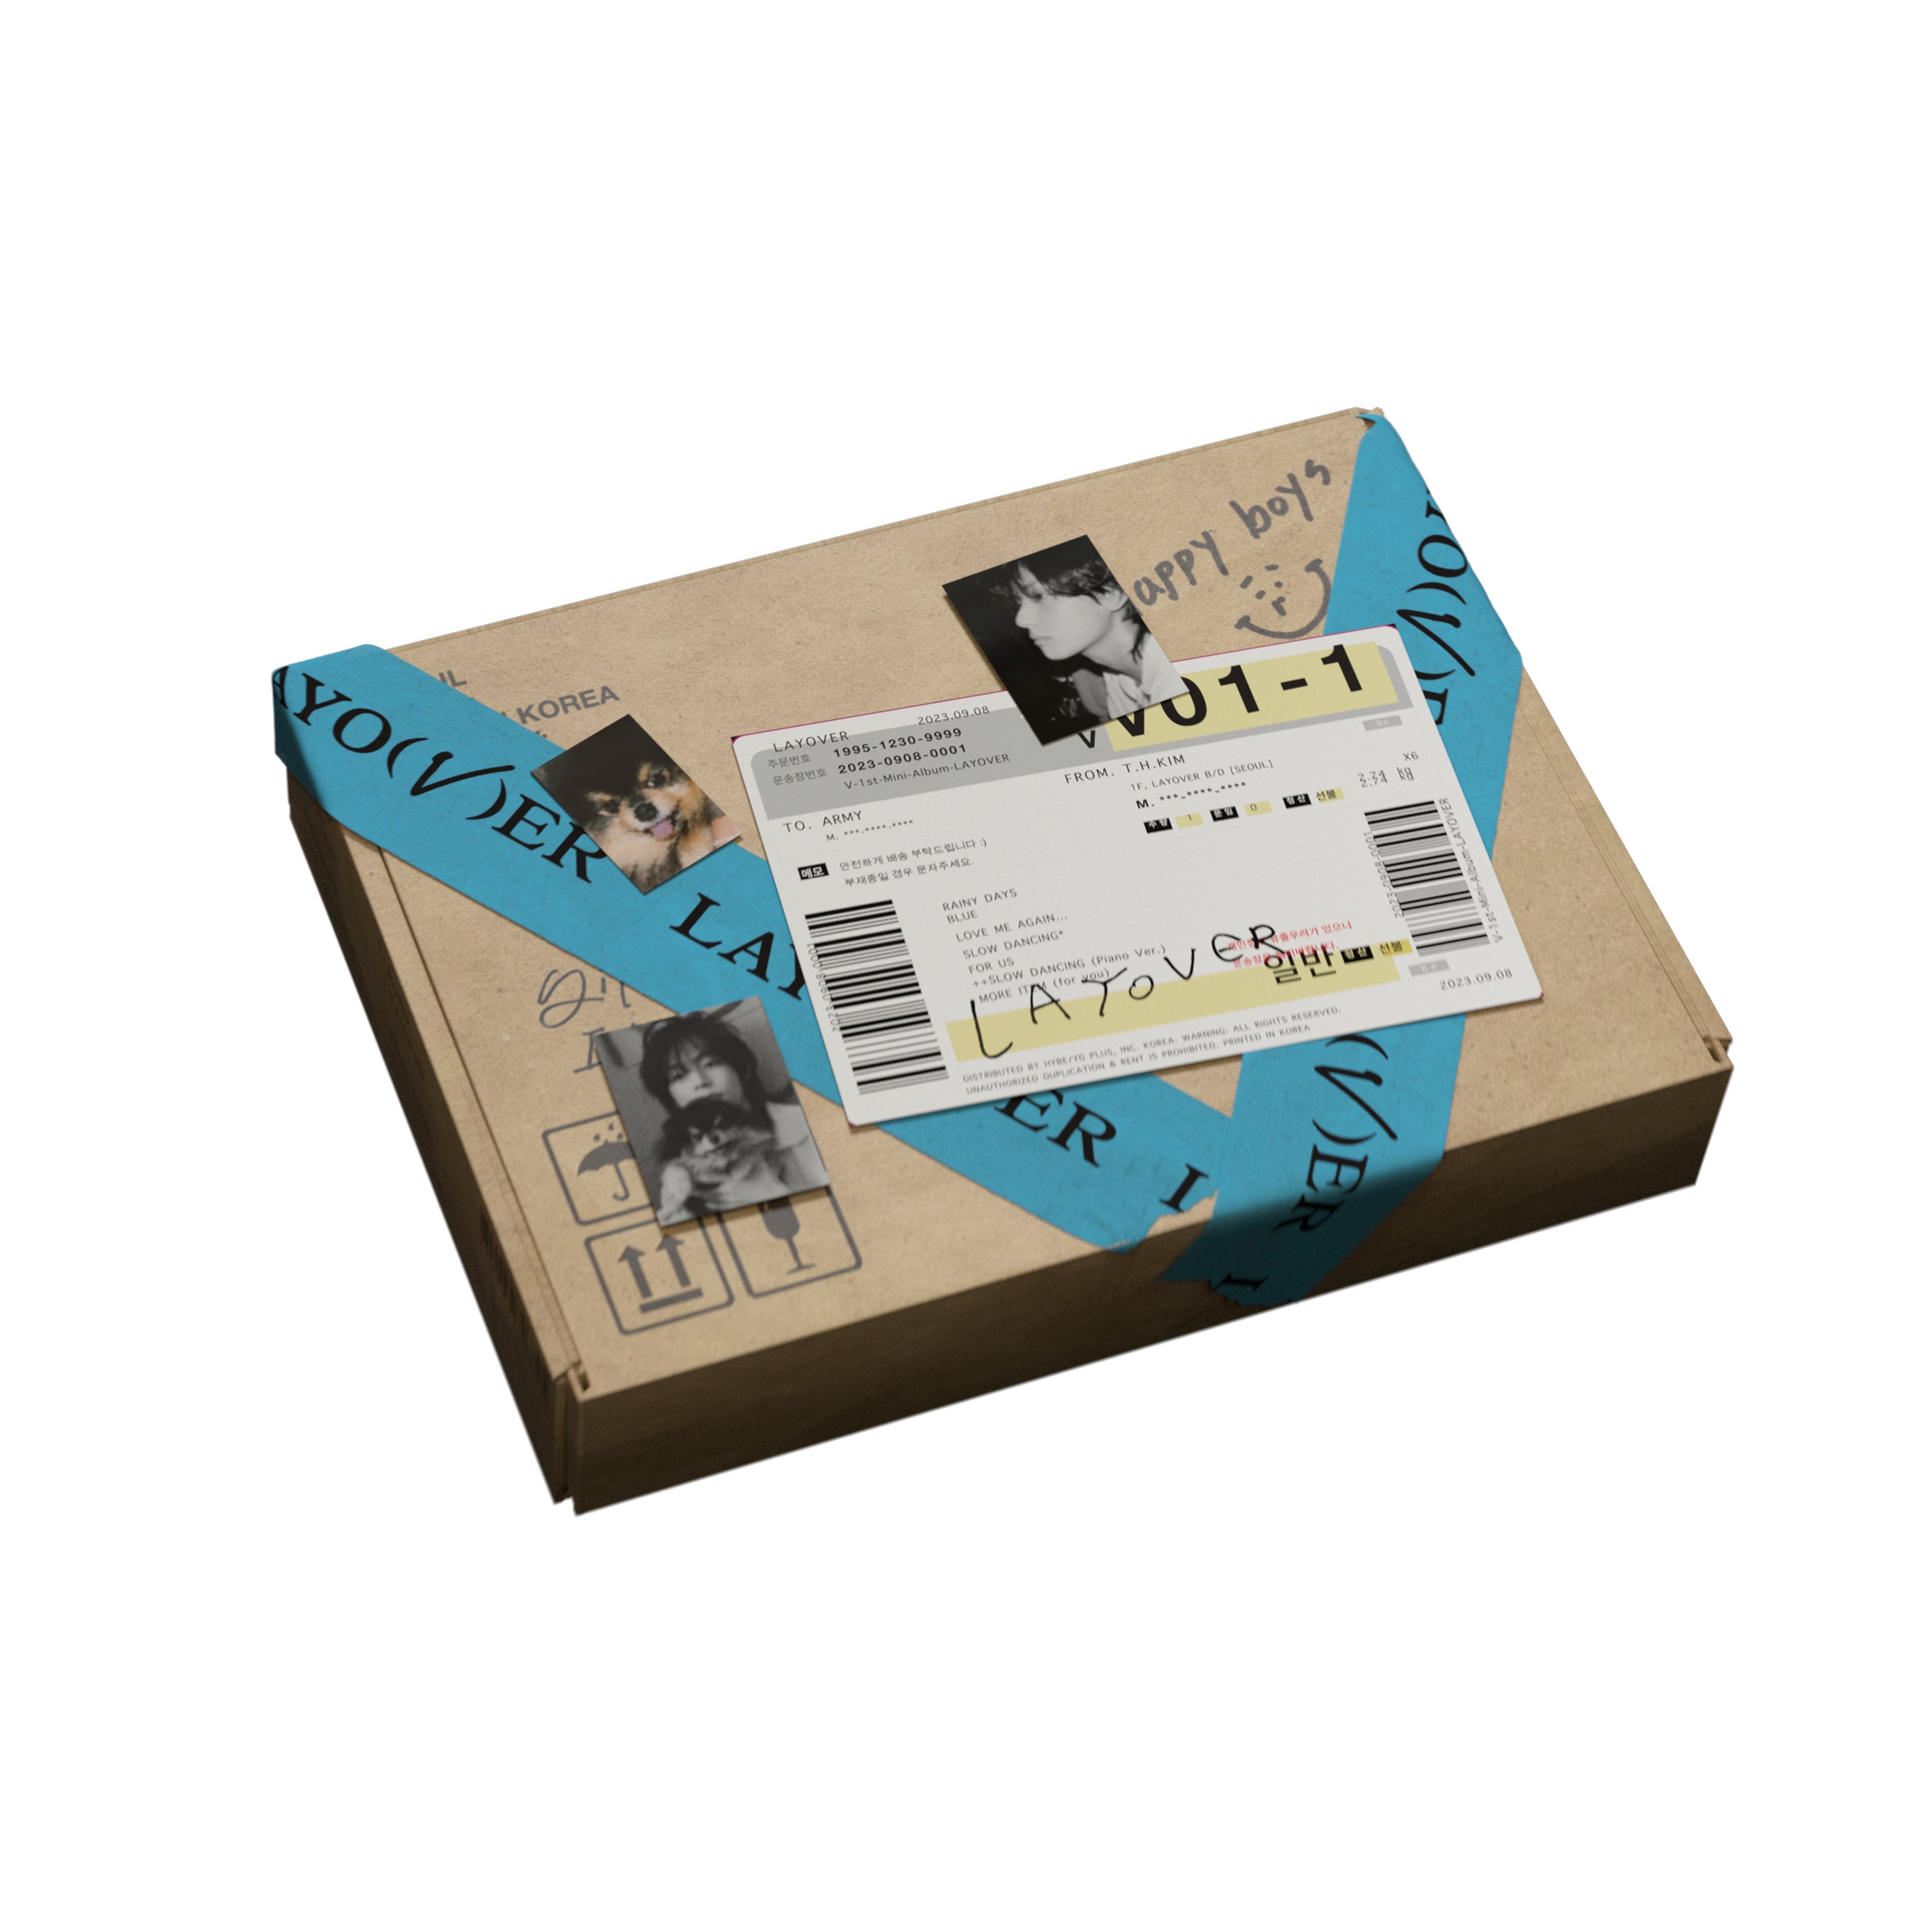 V (BTS) - Layover (Version 02): CD Box Set